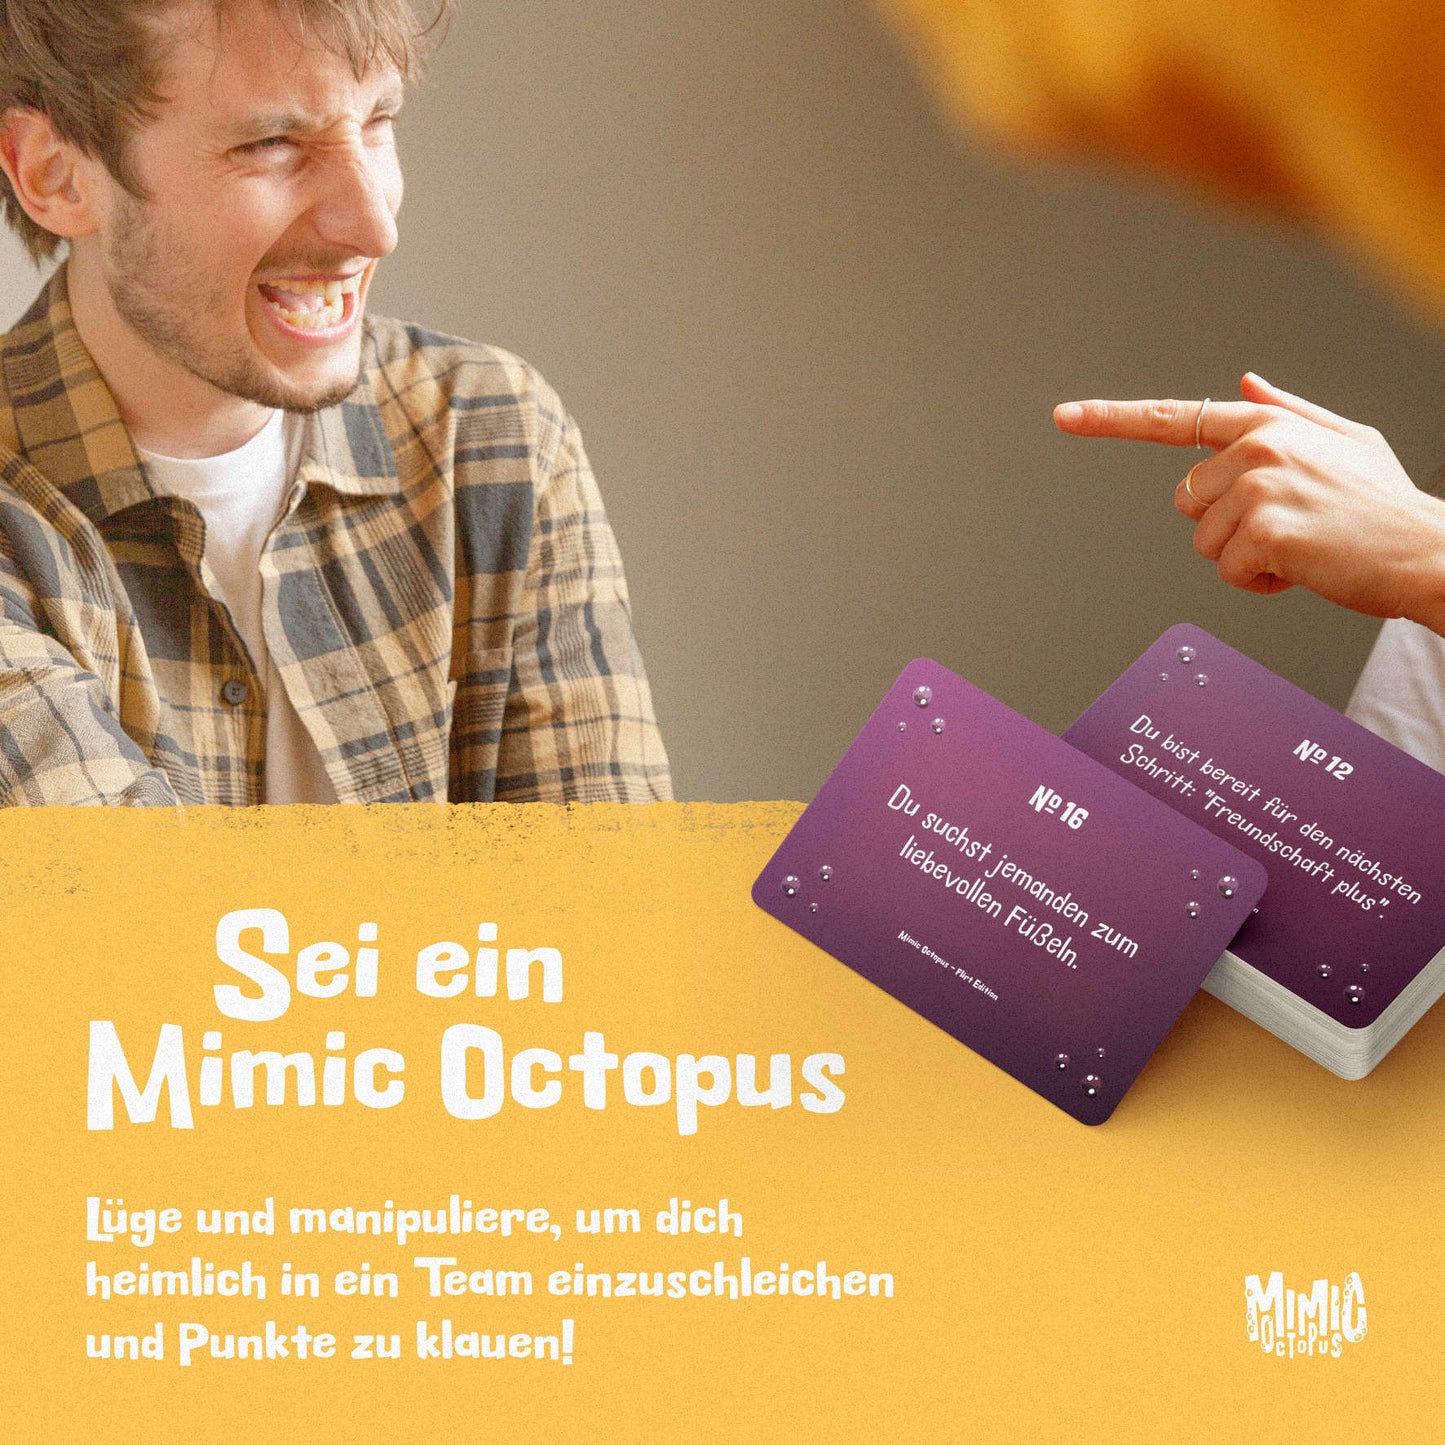 Mimic Octopus - Das Original